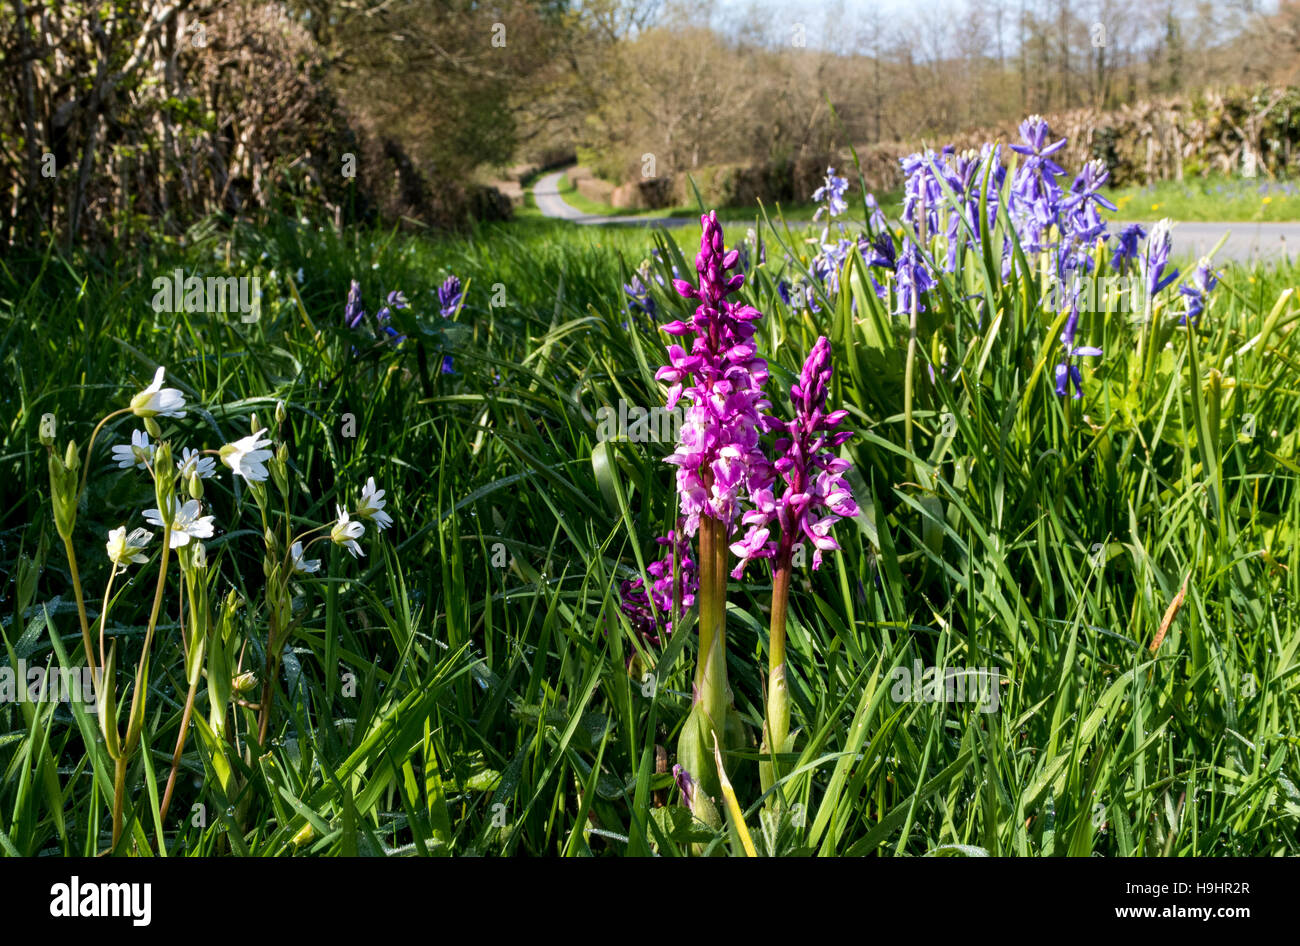 Bunten, wilden Frühlingsblumen auf grasbewachsenen kurz davor ein North Devon Lane, Orchideen, Glockenblumen und Stitchwort wachsen. Stockfoto